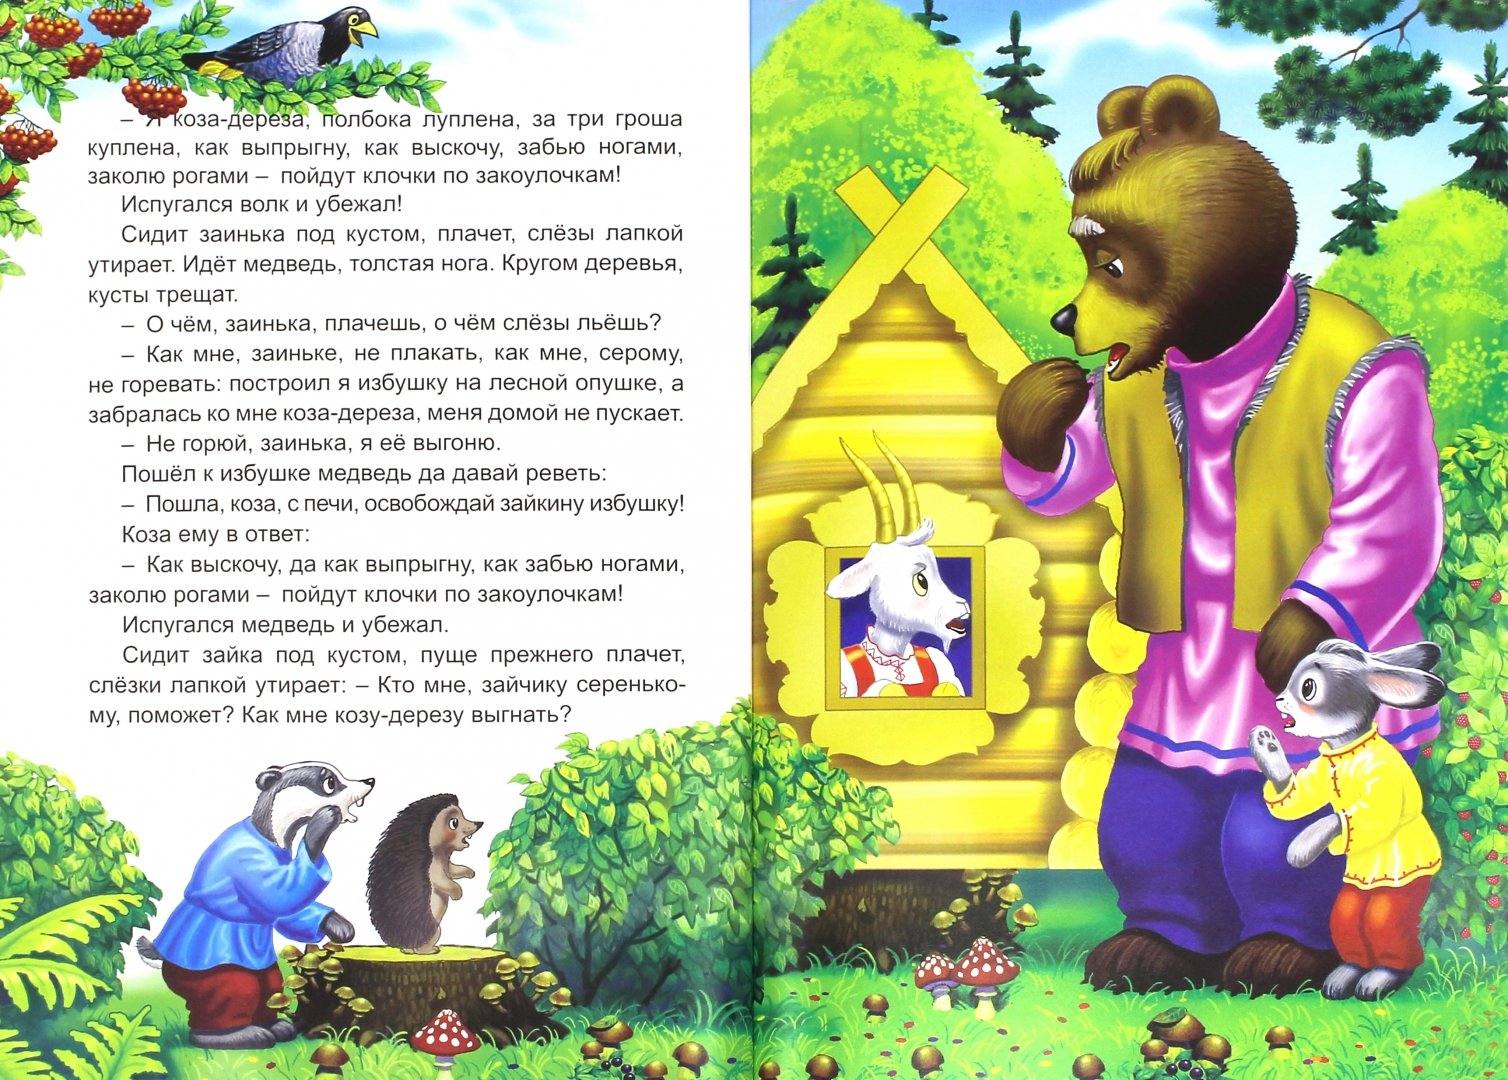 Иллюстрация 1 из 9 для Мир русских сказок | Лабиринт - книги. Источник: Лабиринт